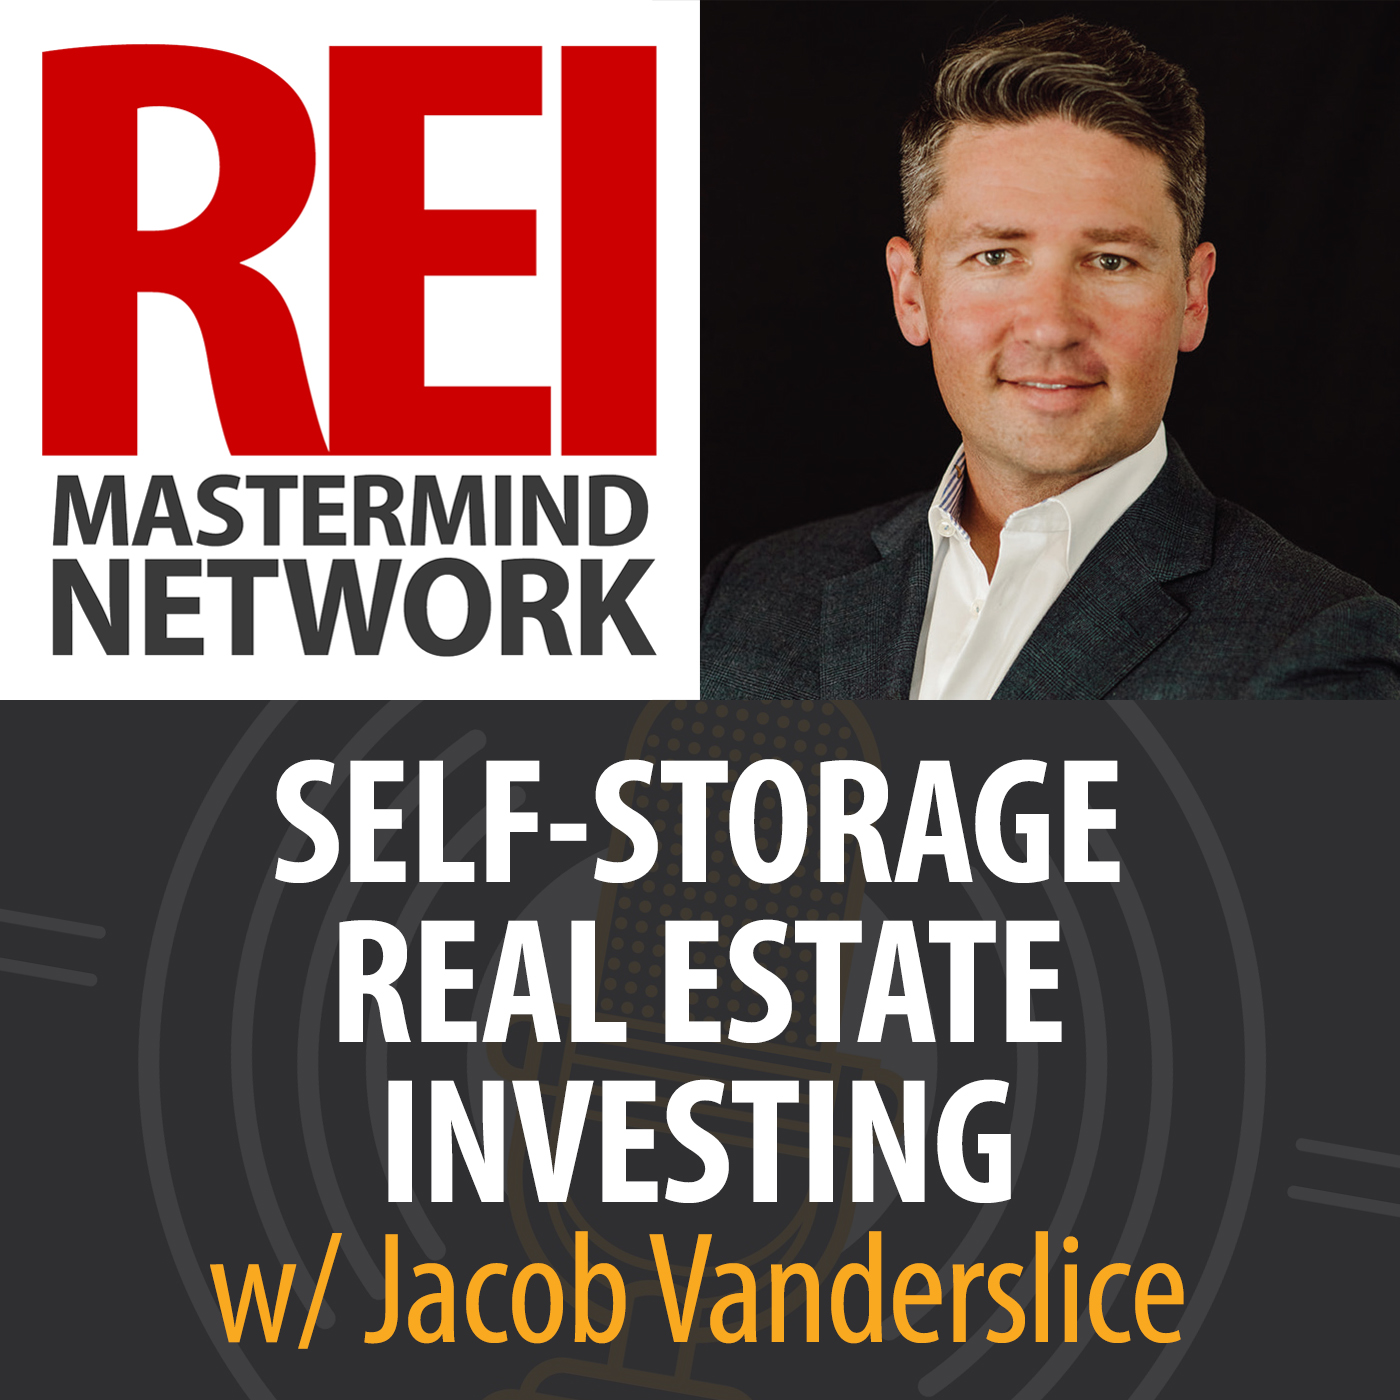 Self-Storage Real Estate Investing with Jacob Vanderslice